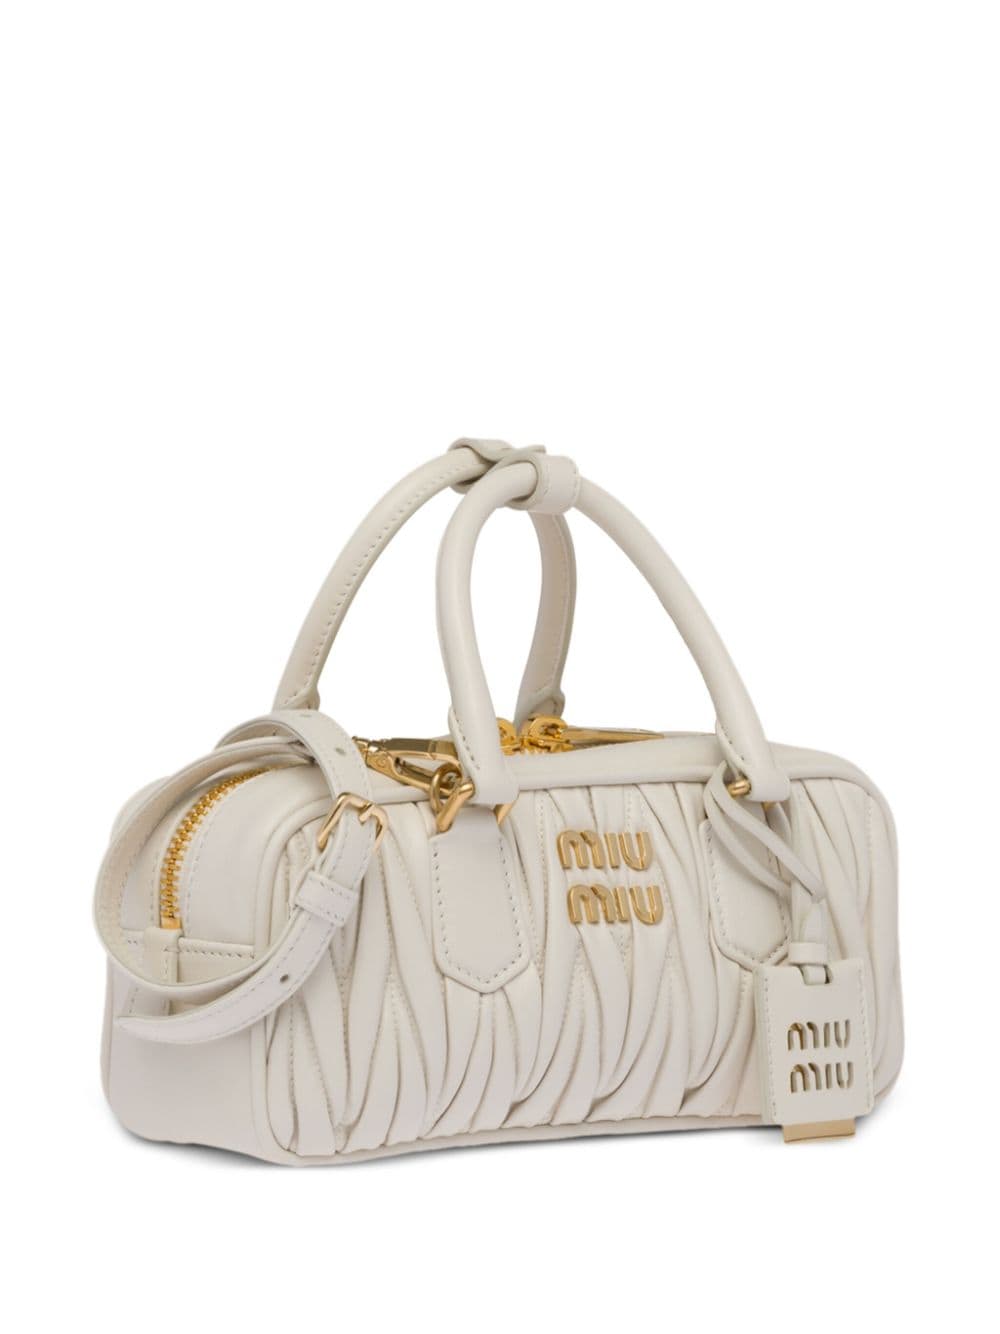 Yes, You Need the Miu Miu Arcadie Bag